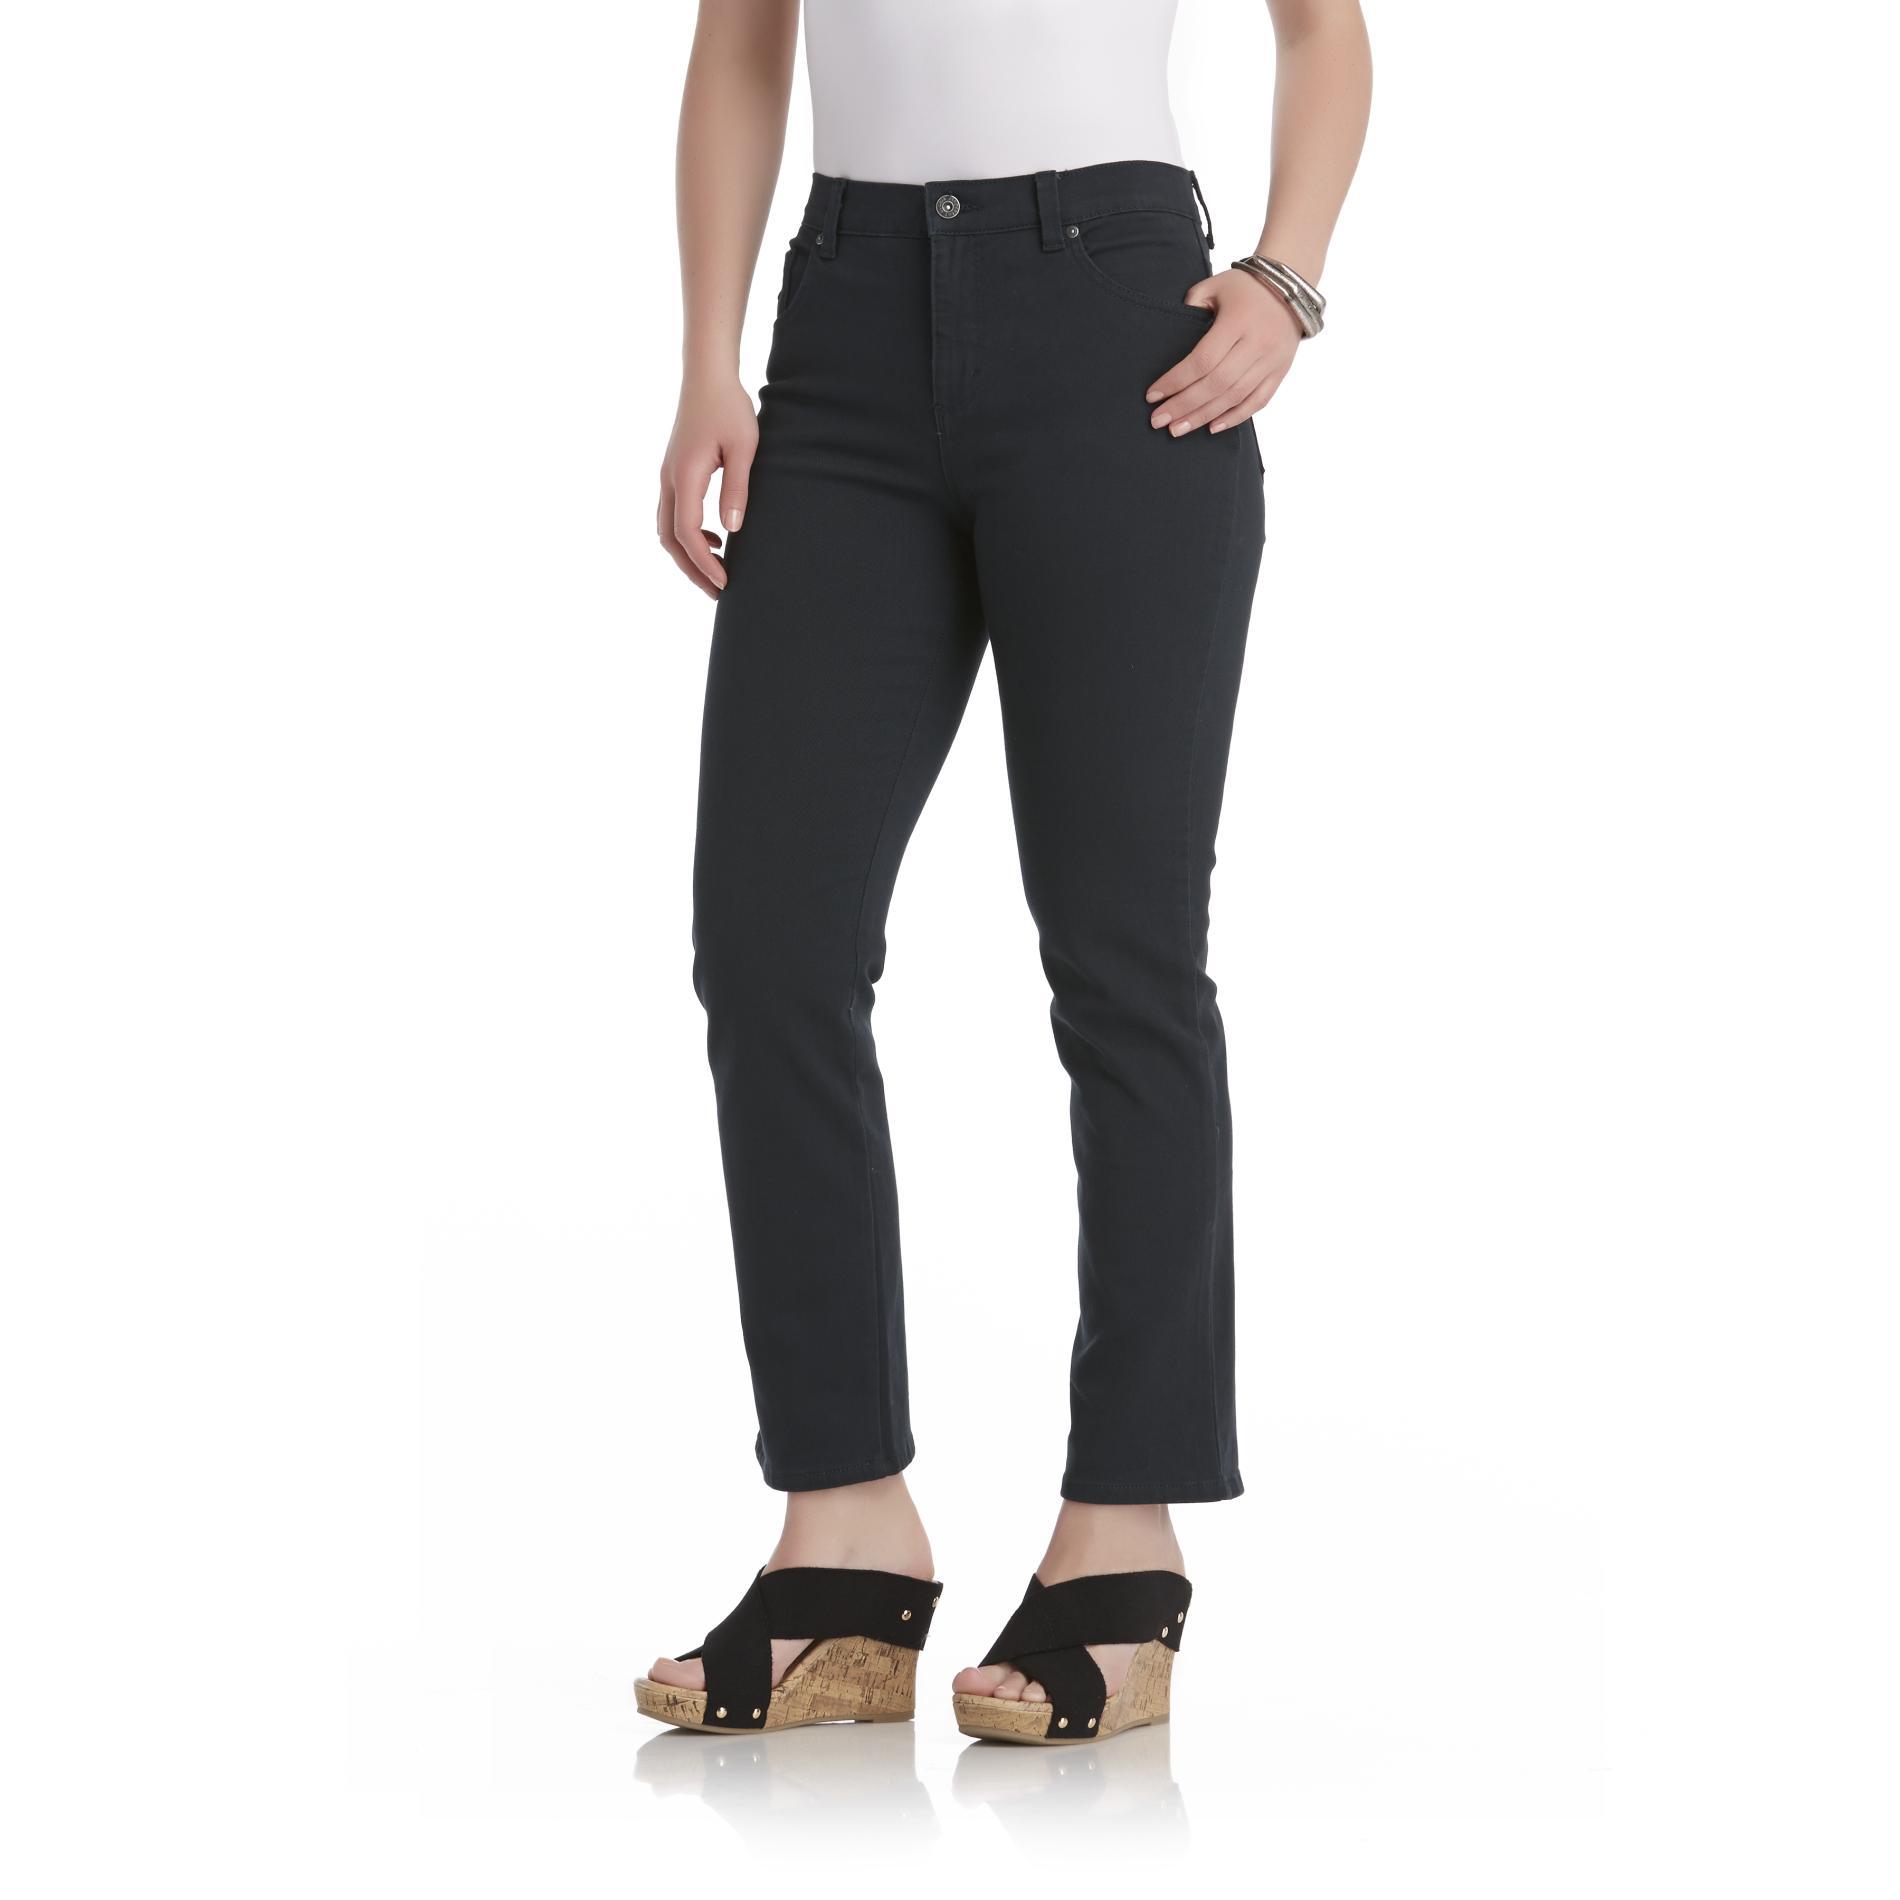 Gloria Vanderbilt Petite's Amanda Colored Jeans